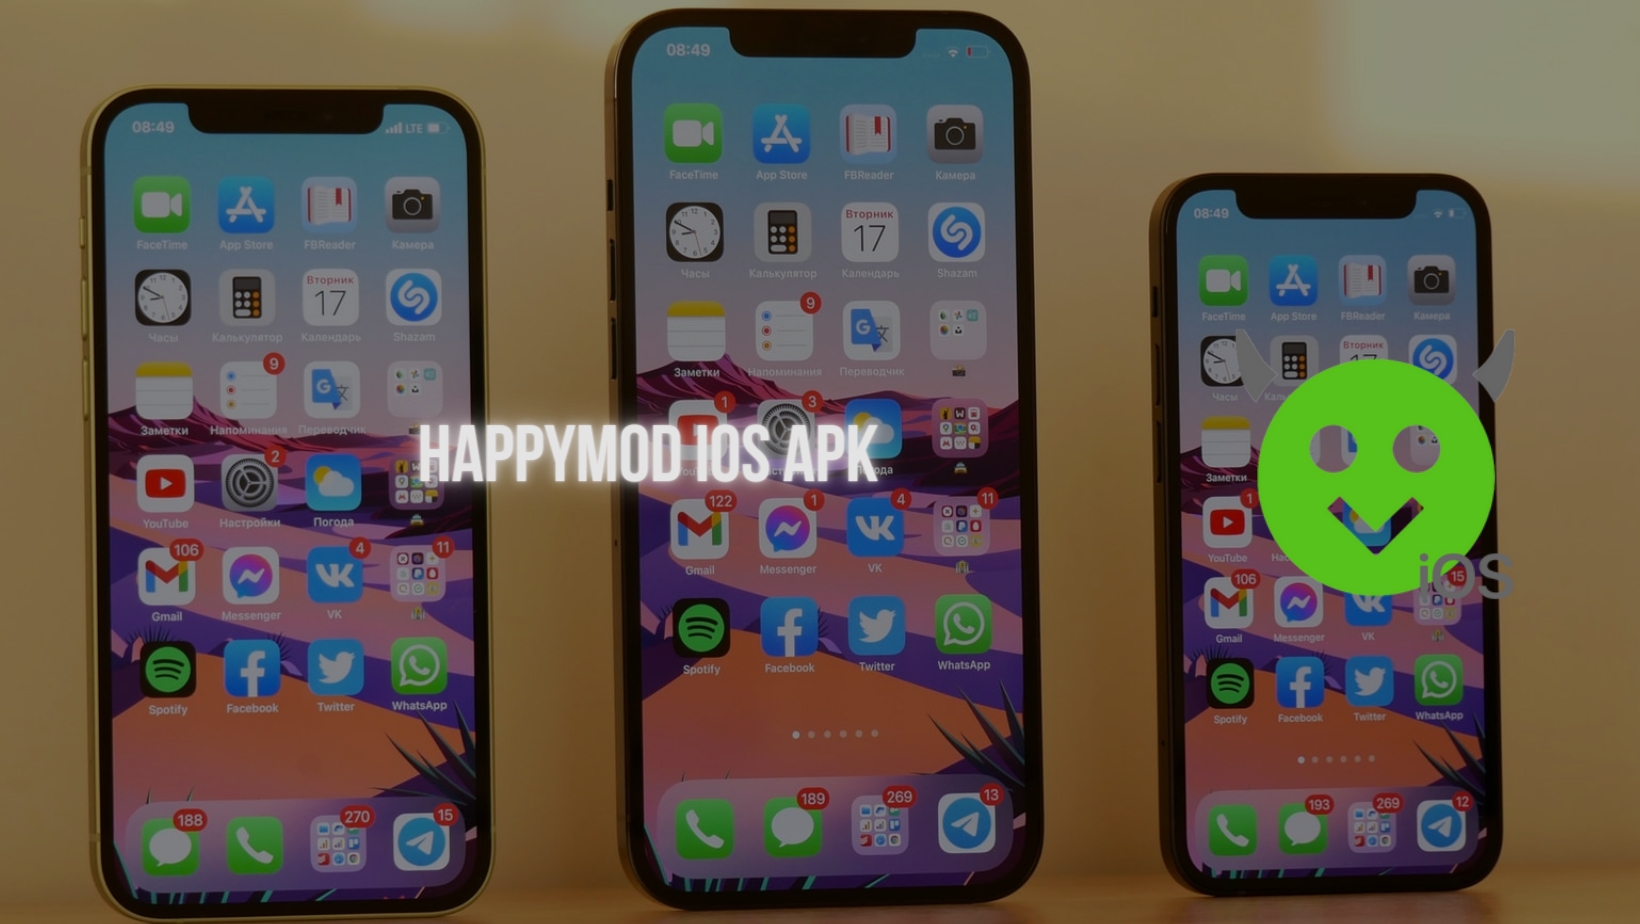 Happymod iOS